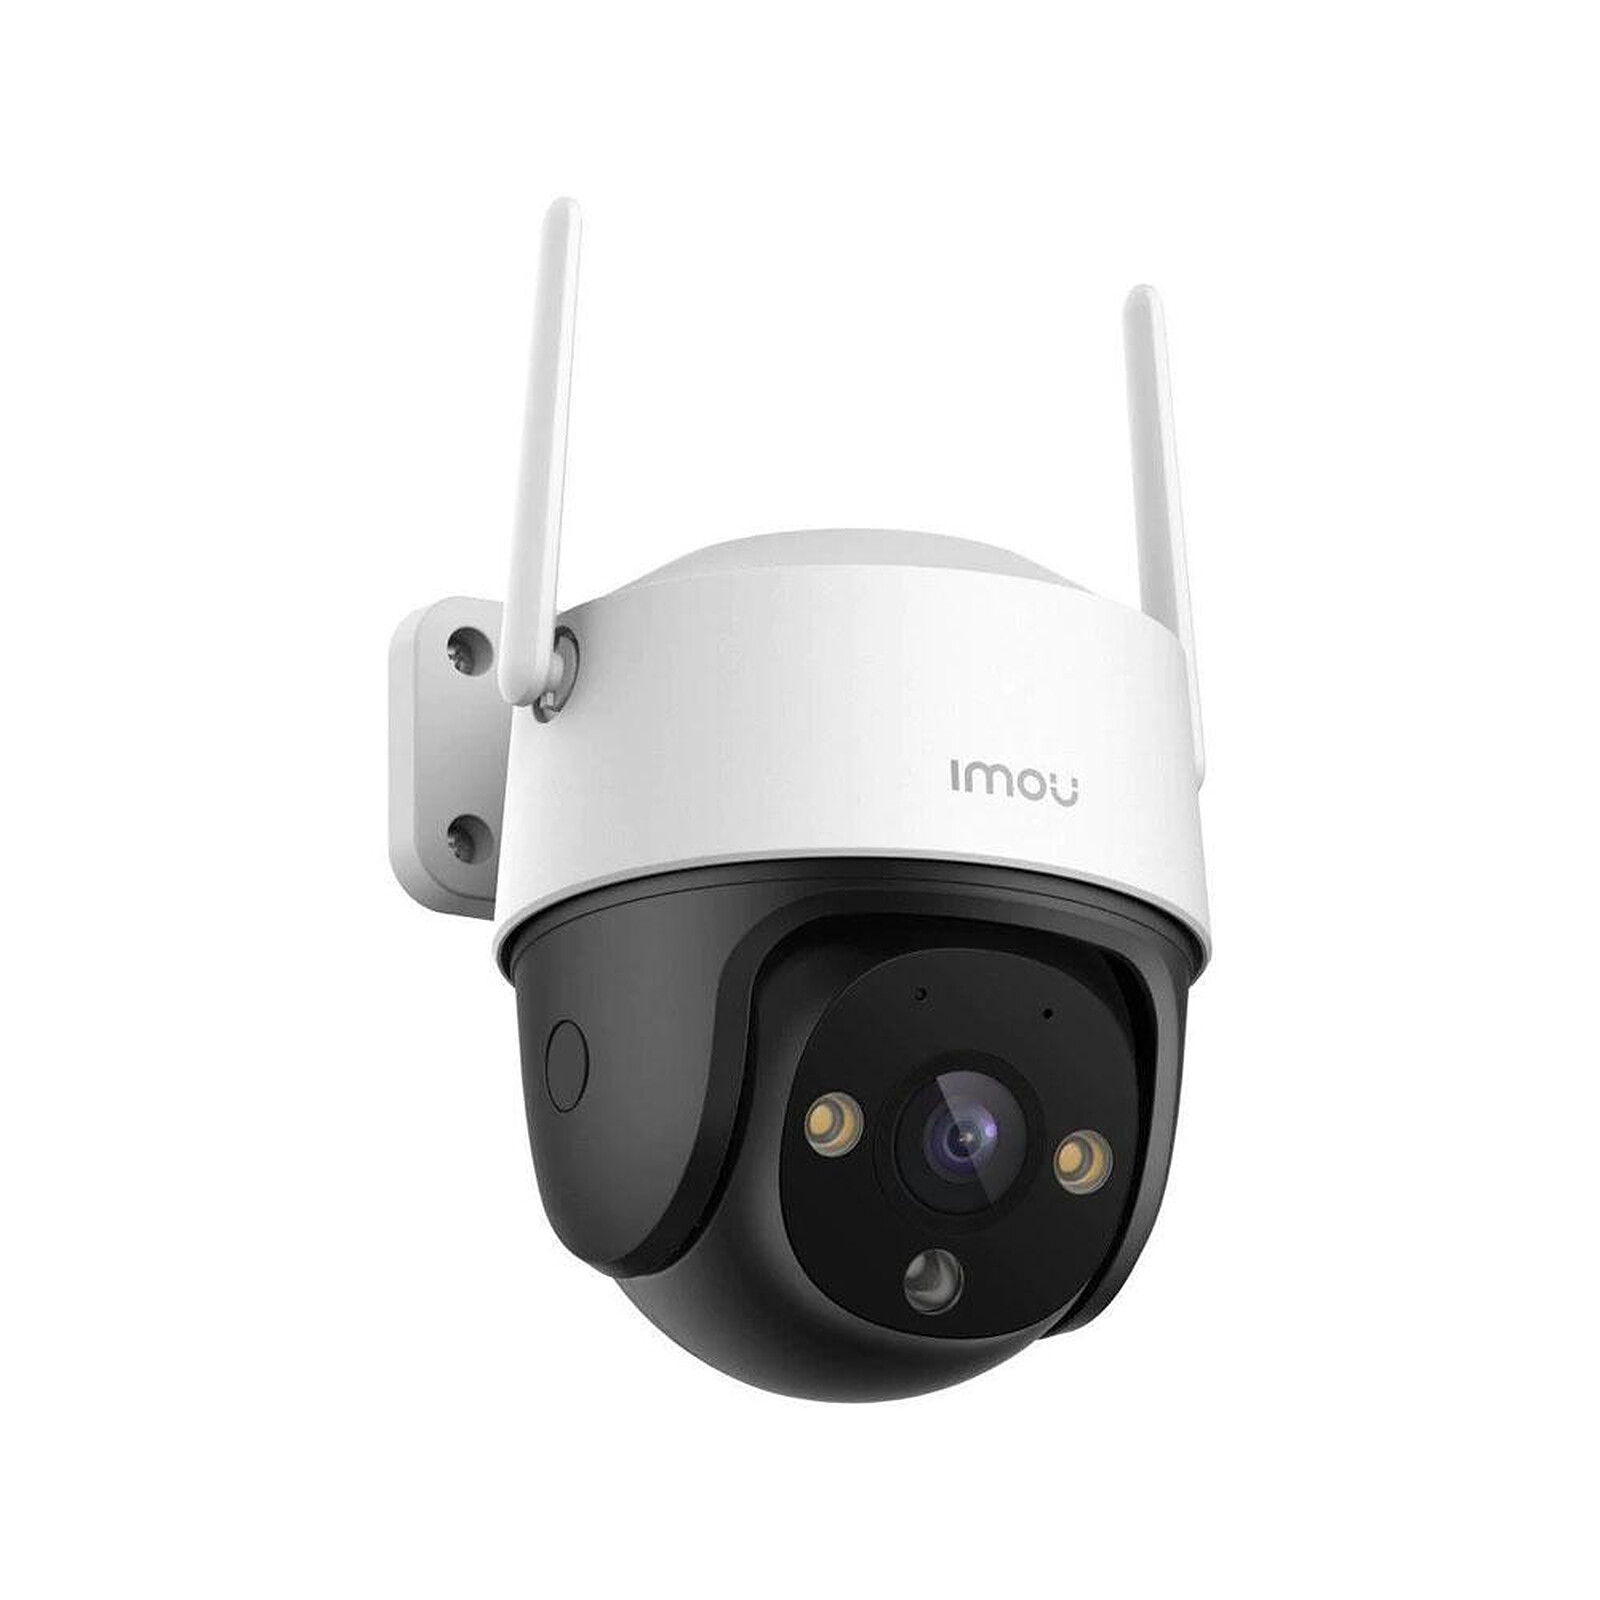 Imou Caméra de Surveillance WiFi Interieur Caméra Dôme 1080P